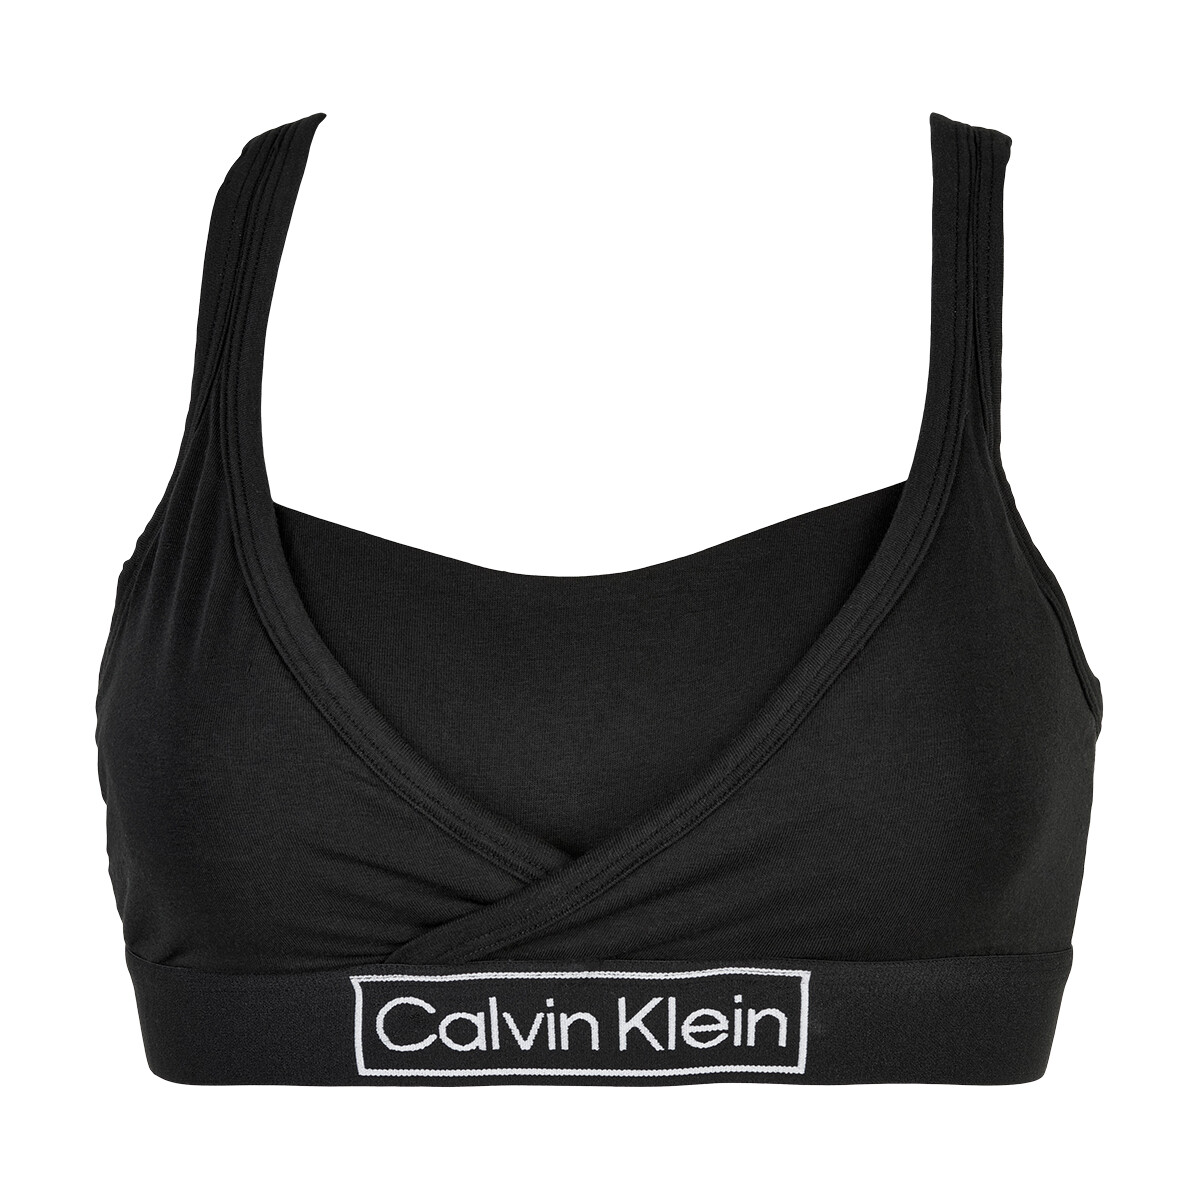 Calvin Klein Lingeri Unlined Bralette, Farve: Sort, Størrelse: S, Dame